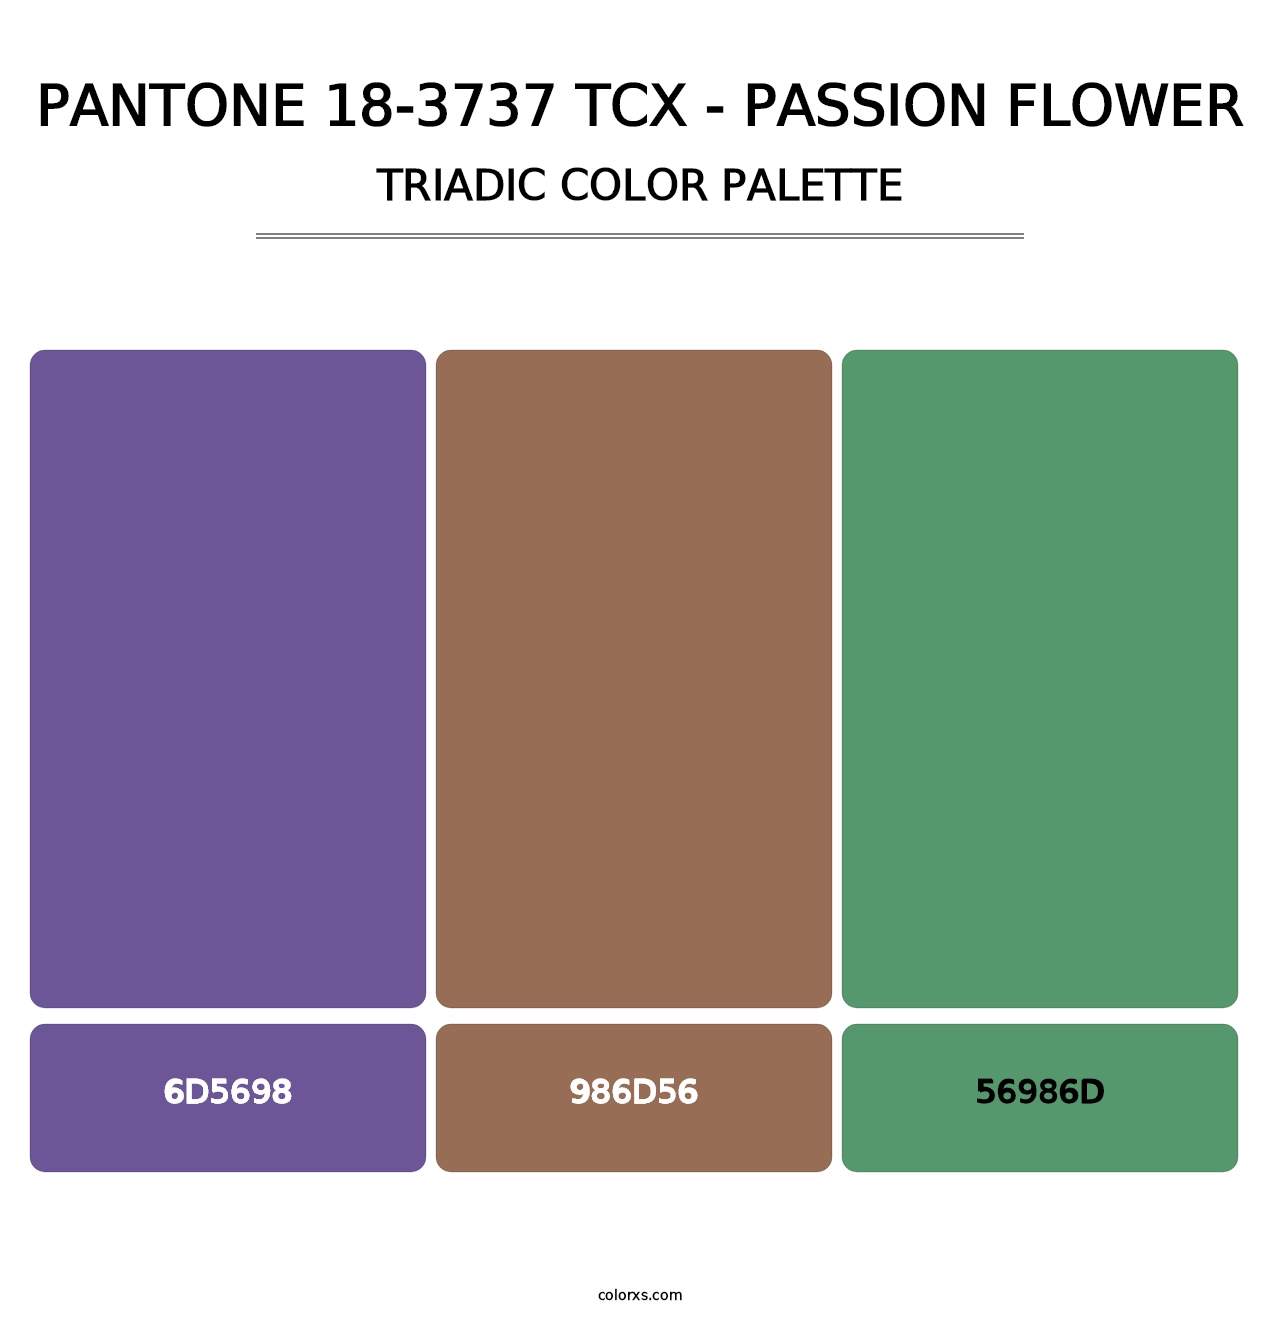 PANTONE 18-3737 TCX - Passion Flower - Triadic Color Palette